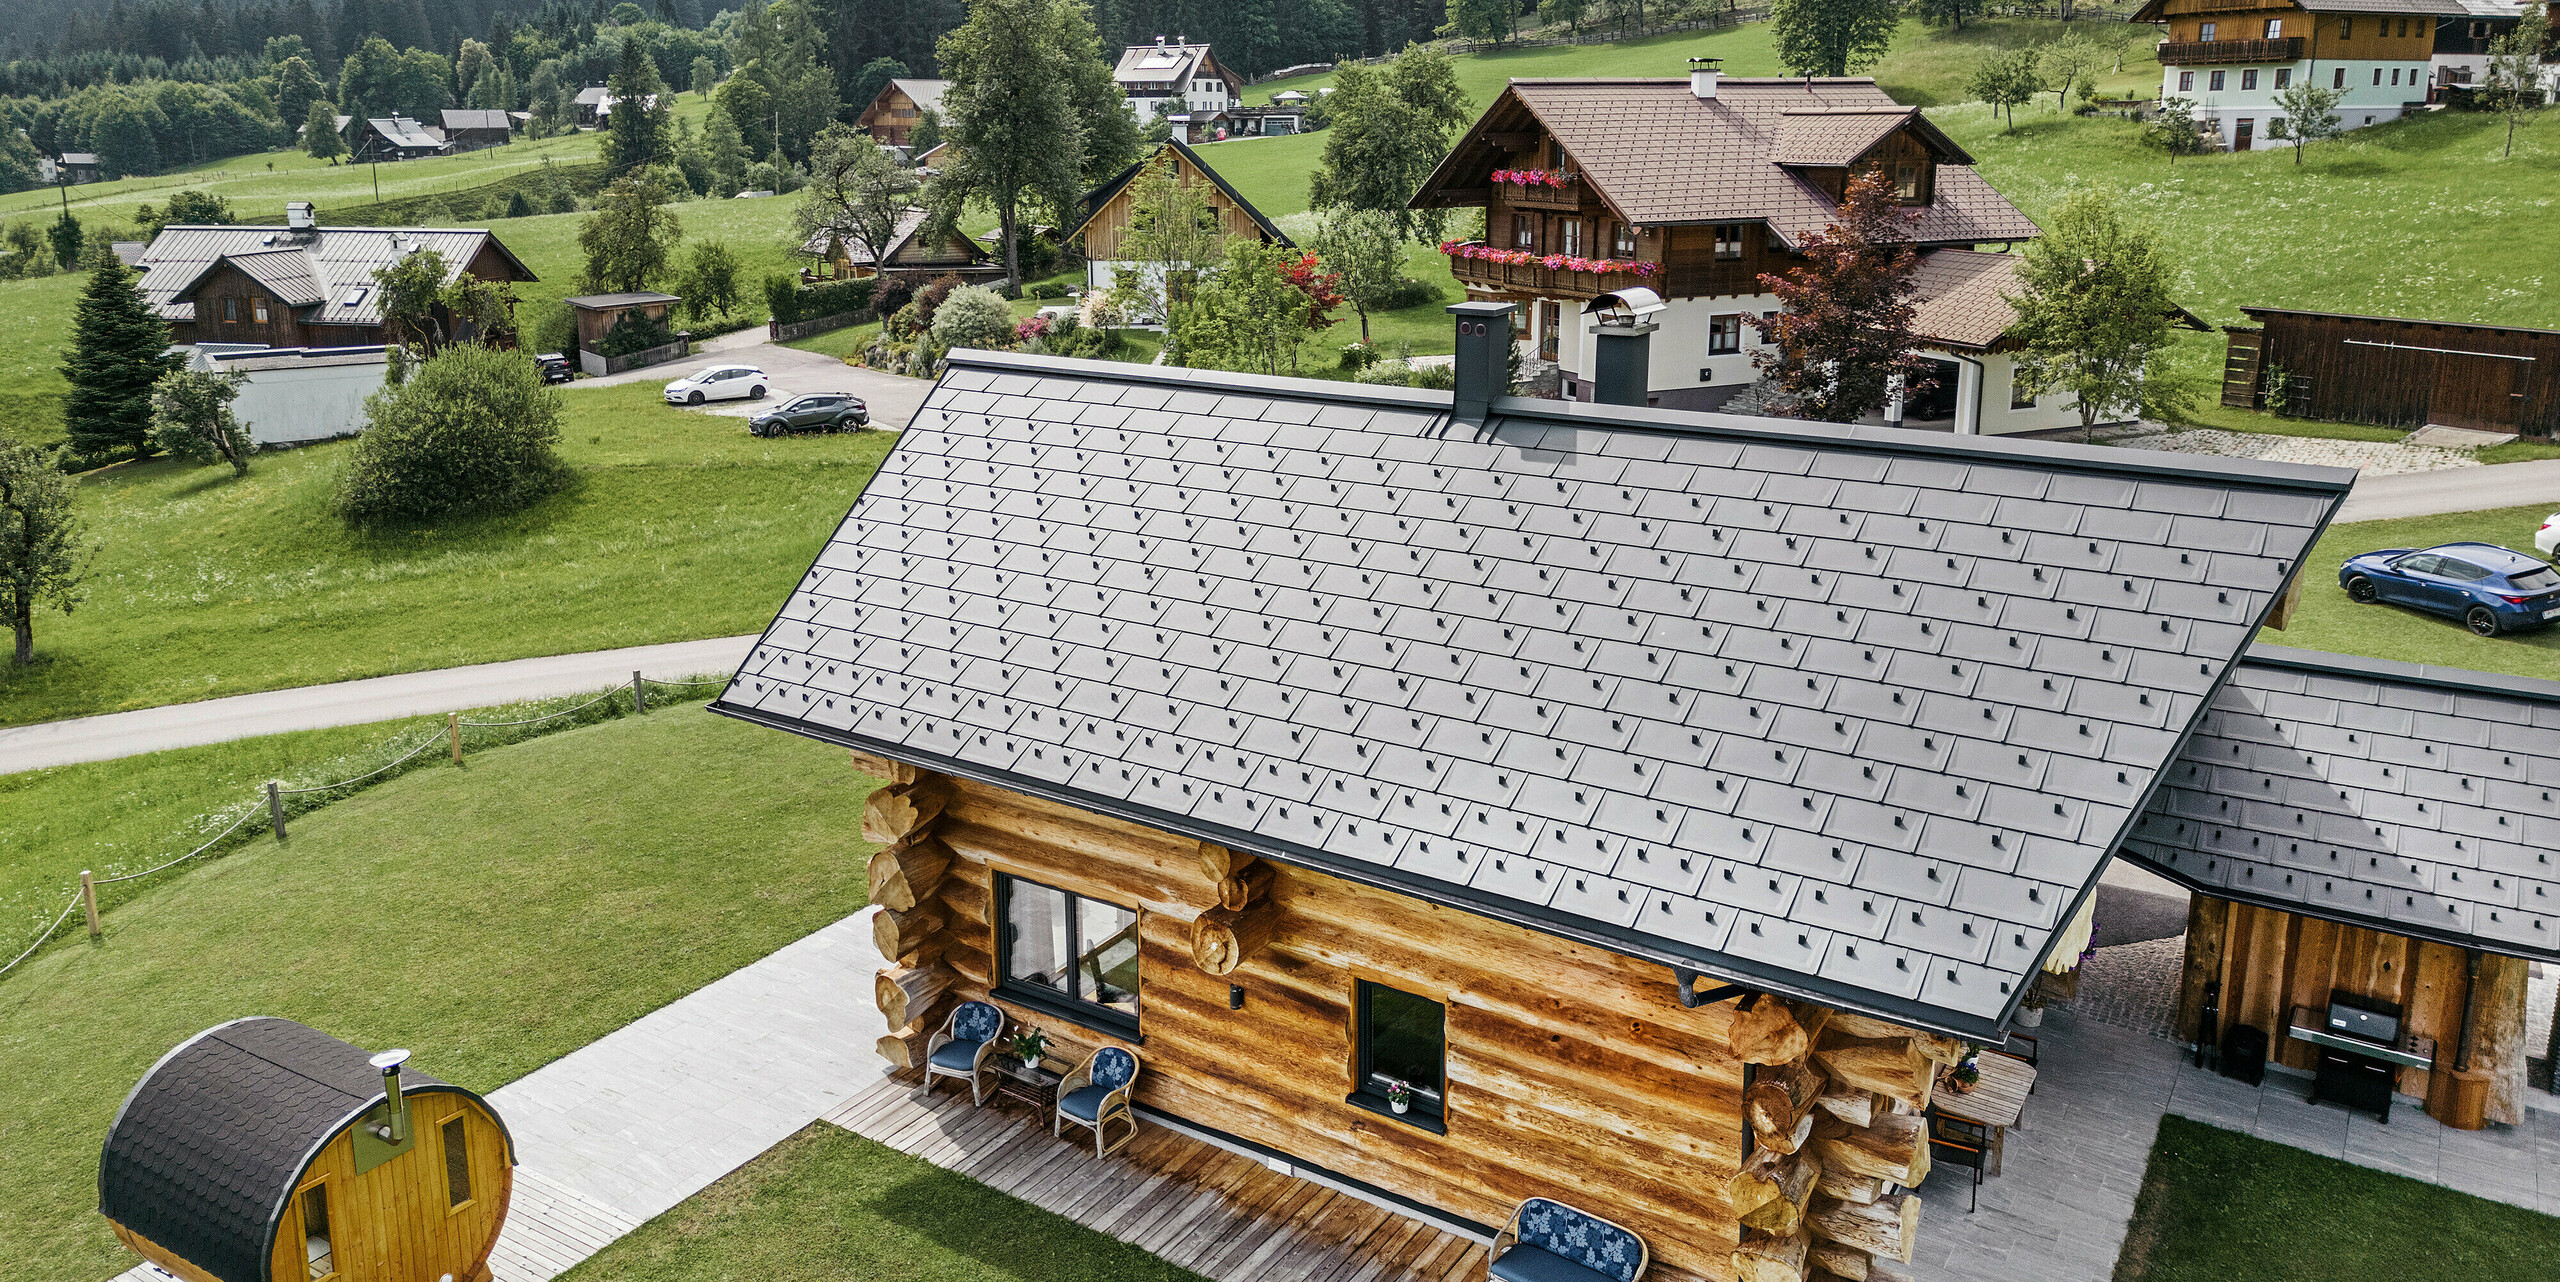 Pohled z ptačí perspektivy na rustikální srub v rakouském Gosau s kvalitní hliníkovou střechou PREFA ze střešních panelů R.16 v barvě P.10 antracitové. Střecha ukazuje typickou strukturu a preciznost střešních systémů PREFA, které dokonale zapadají do venkovského prostředí. Svěží zeleň luk, okolní tradiční domy a zalesněné kopce v pozadí tvoří přirozený kontrast k moderním střešním prvkům v antracitové barvě, které do alpské architektury přinášejí odolnost a moderní estetiku.